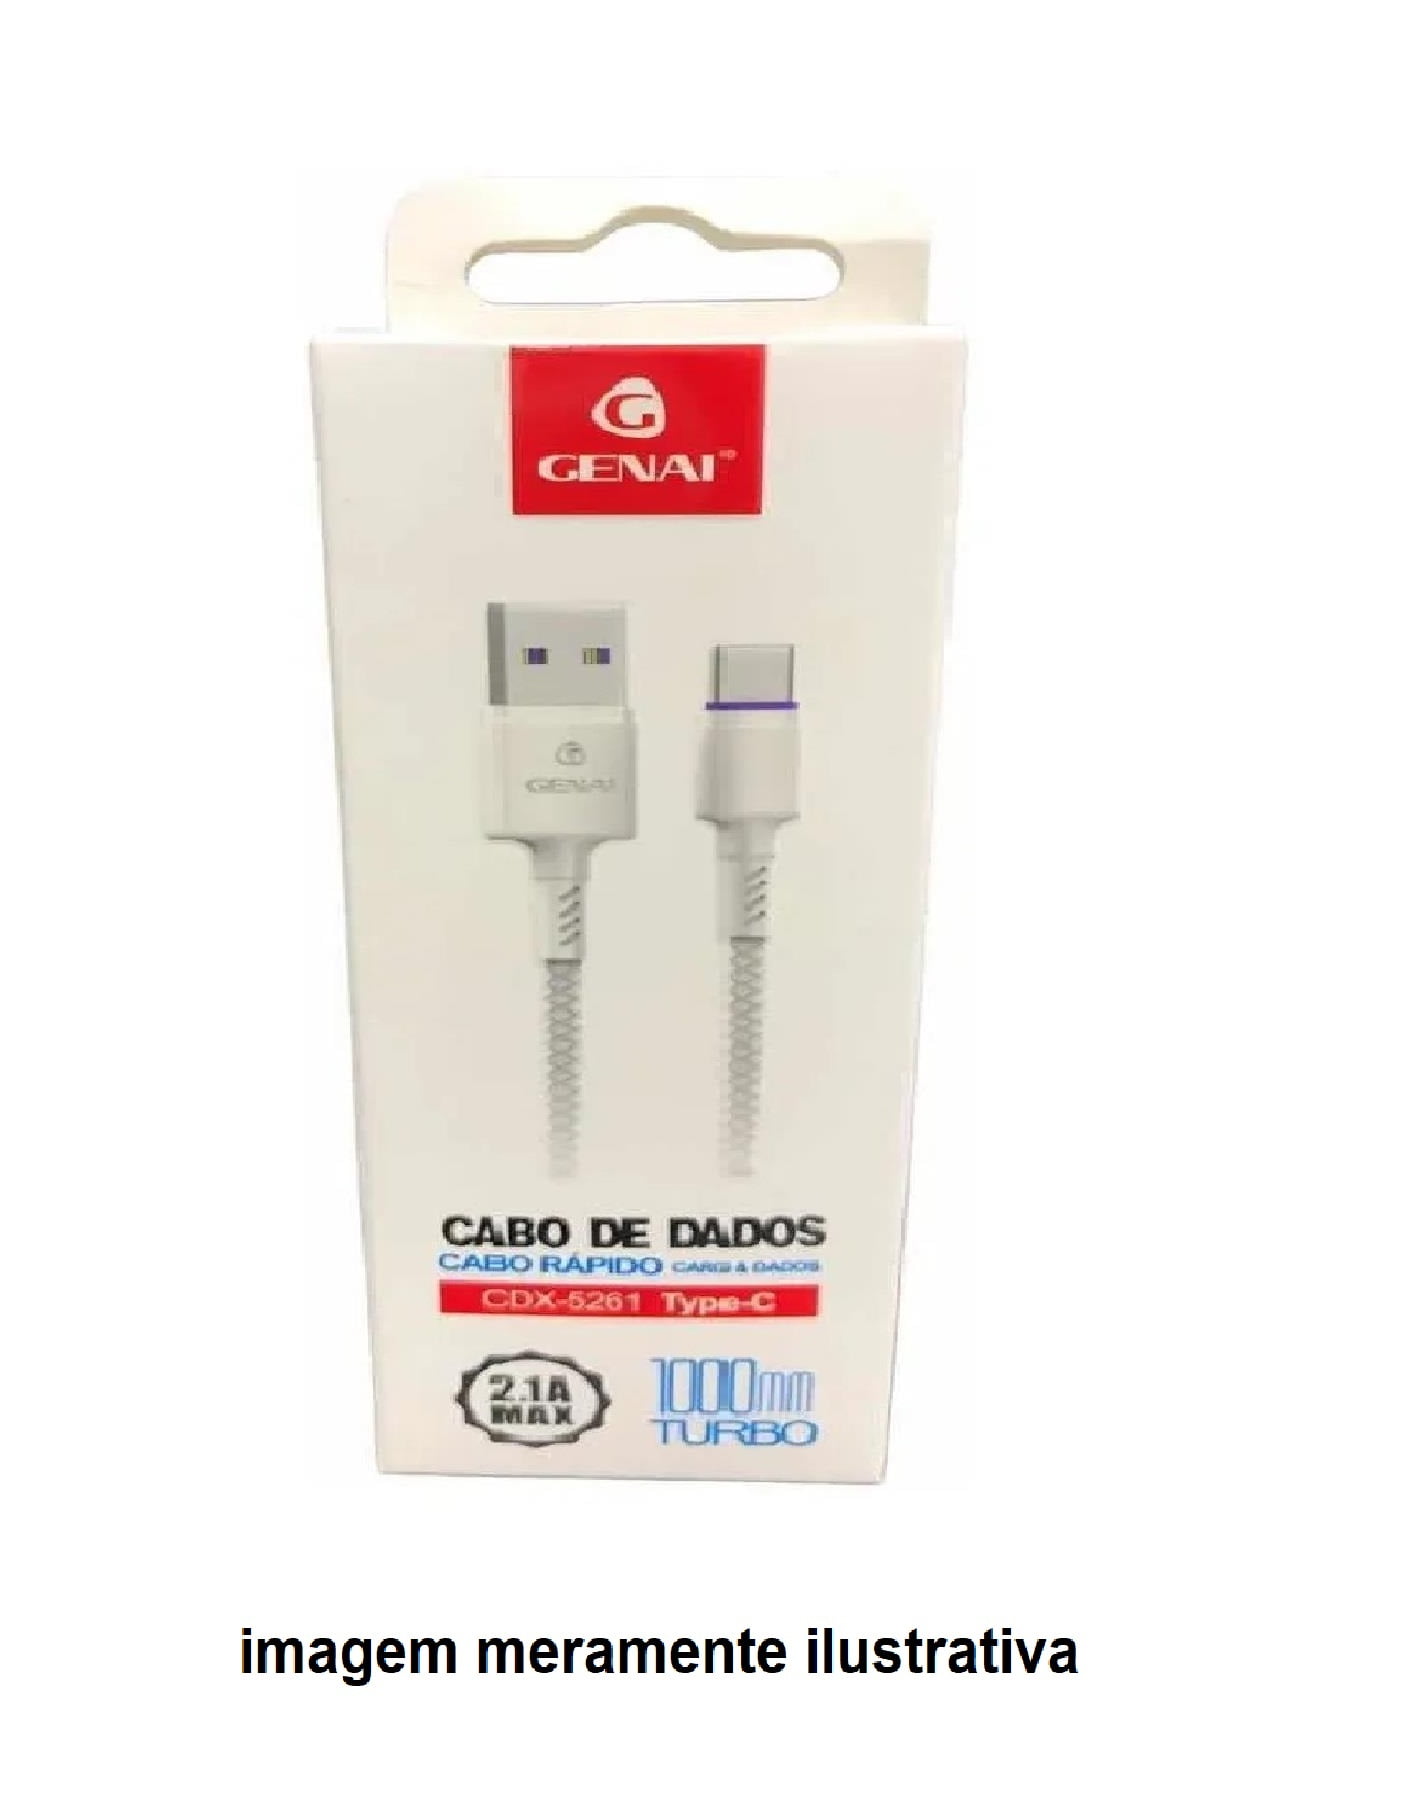 CABO USB P/ IPHONE LIGHTNING CARREGAMENTO DADOS GENAI 1000MM 2.1A TURBO